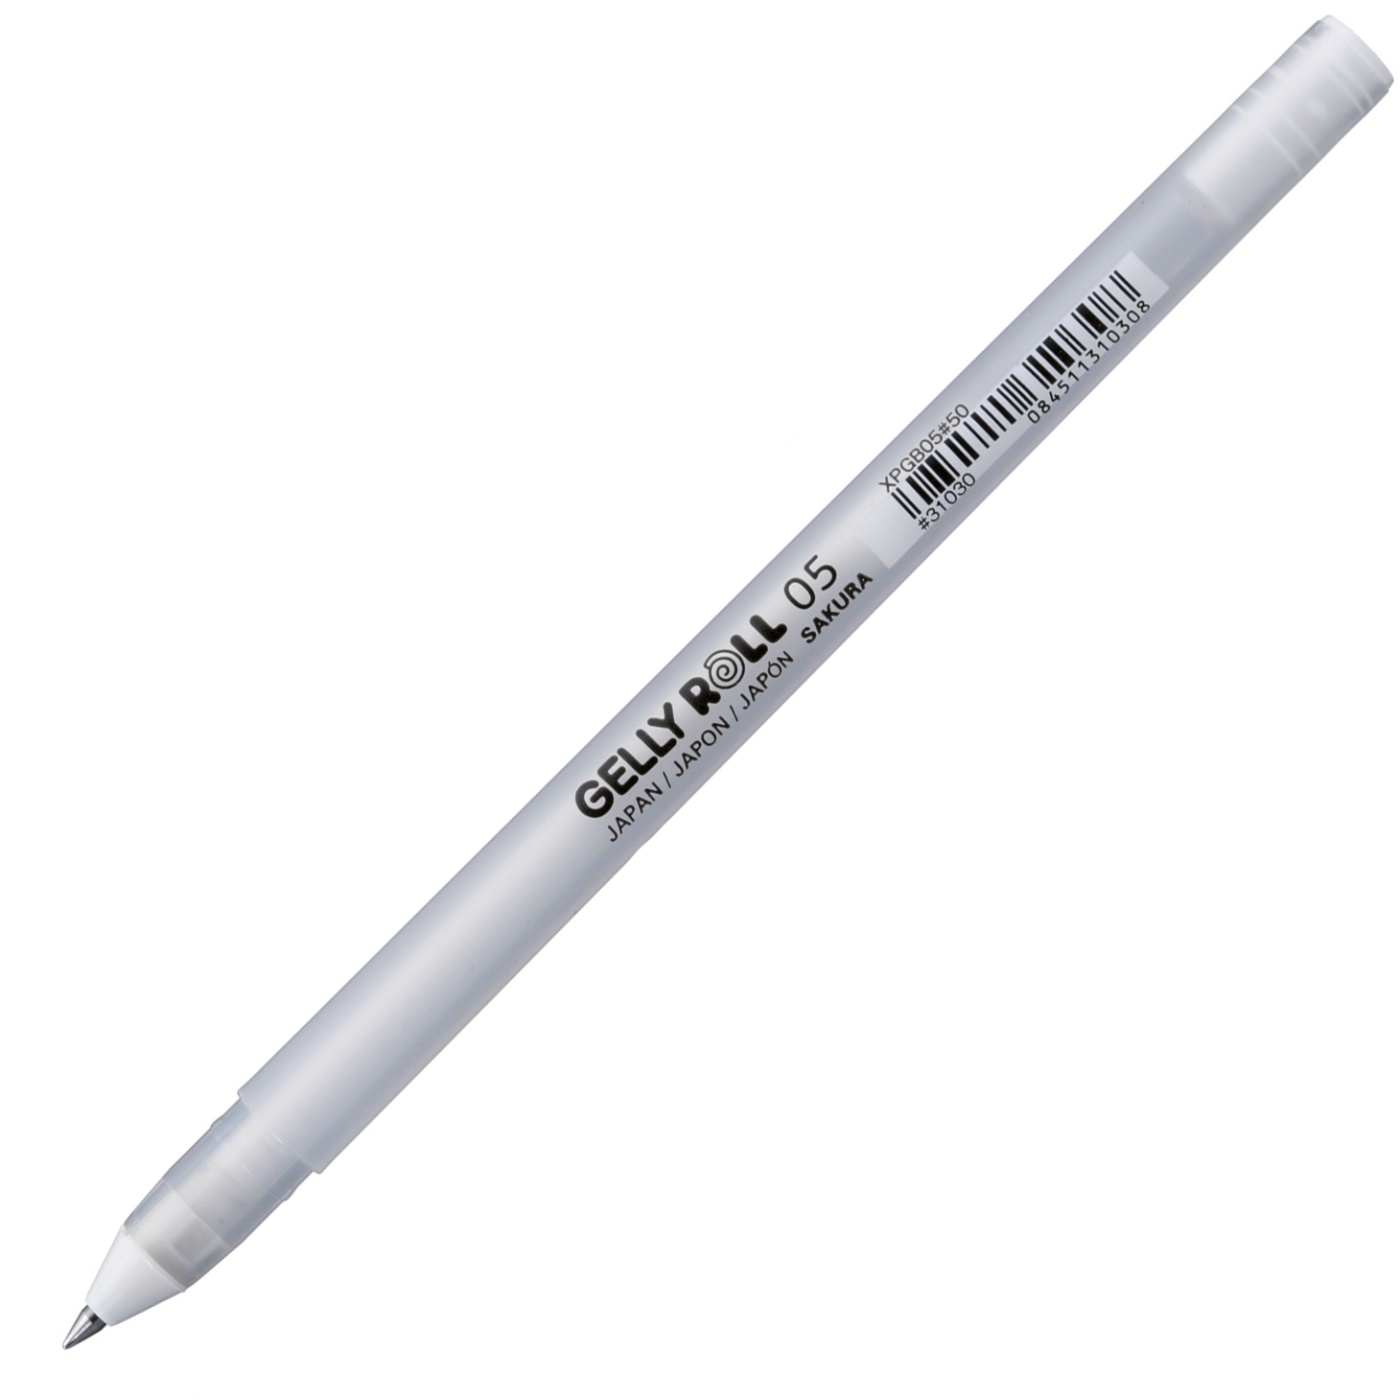 Sakura 57452 Gelly Roll Classic 05 (Fine Pt.) 3pk Pen, White